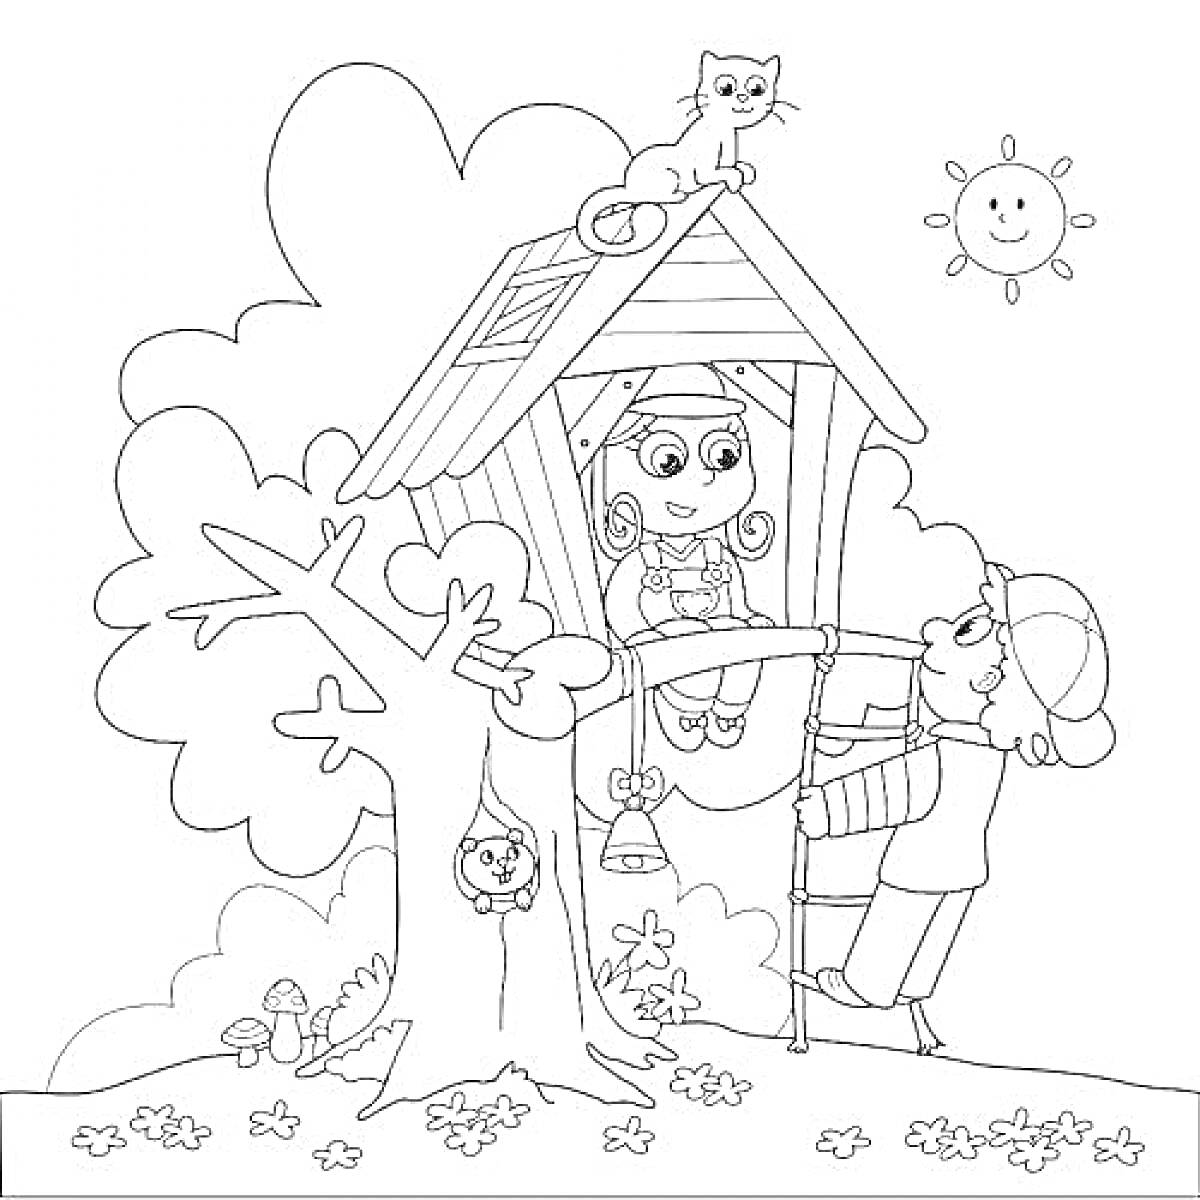 Ребенок и взрослый у домика на дереве, кошка на крыше, сова в дупле, солнце на небе, грибы и трава у основания дерева